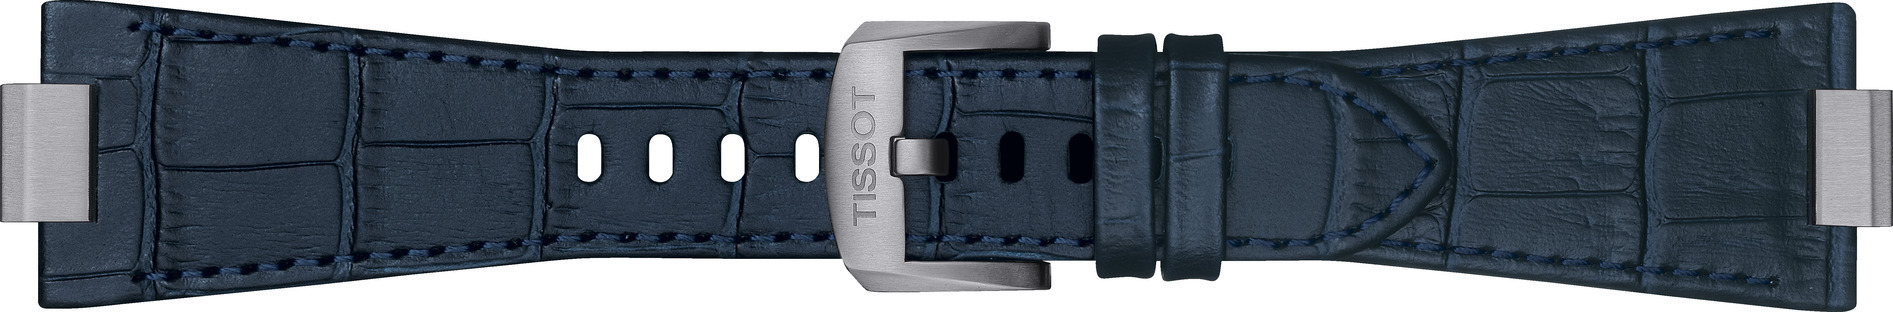 Tissot prx lederen horlogeband blauw met gesp t600047701